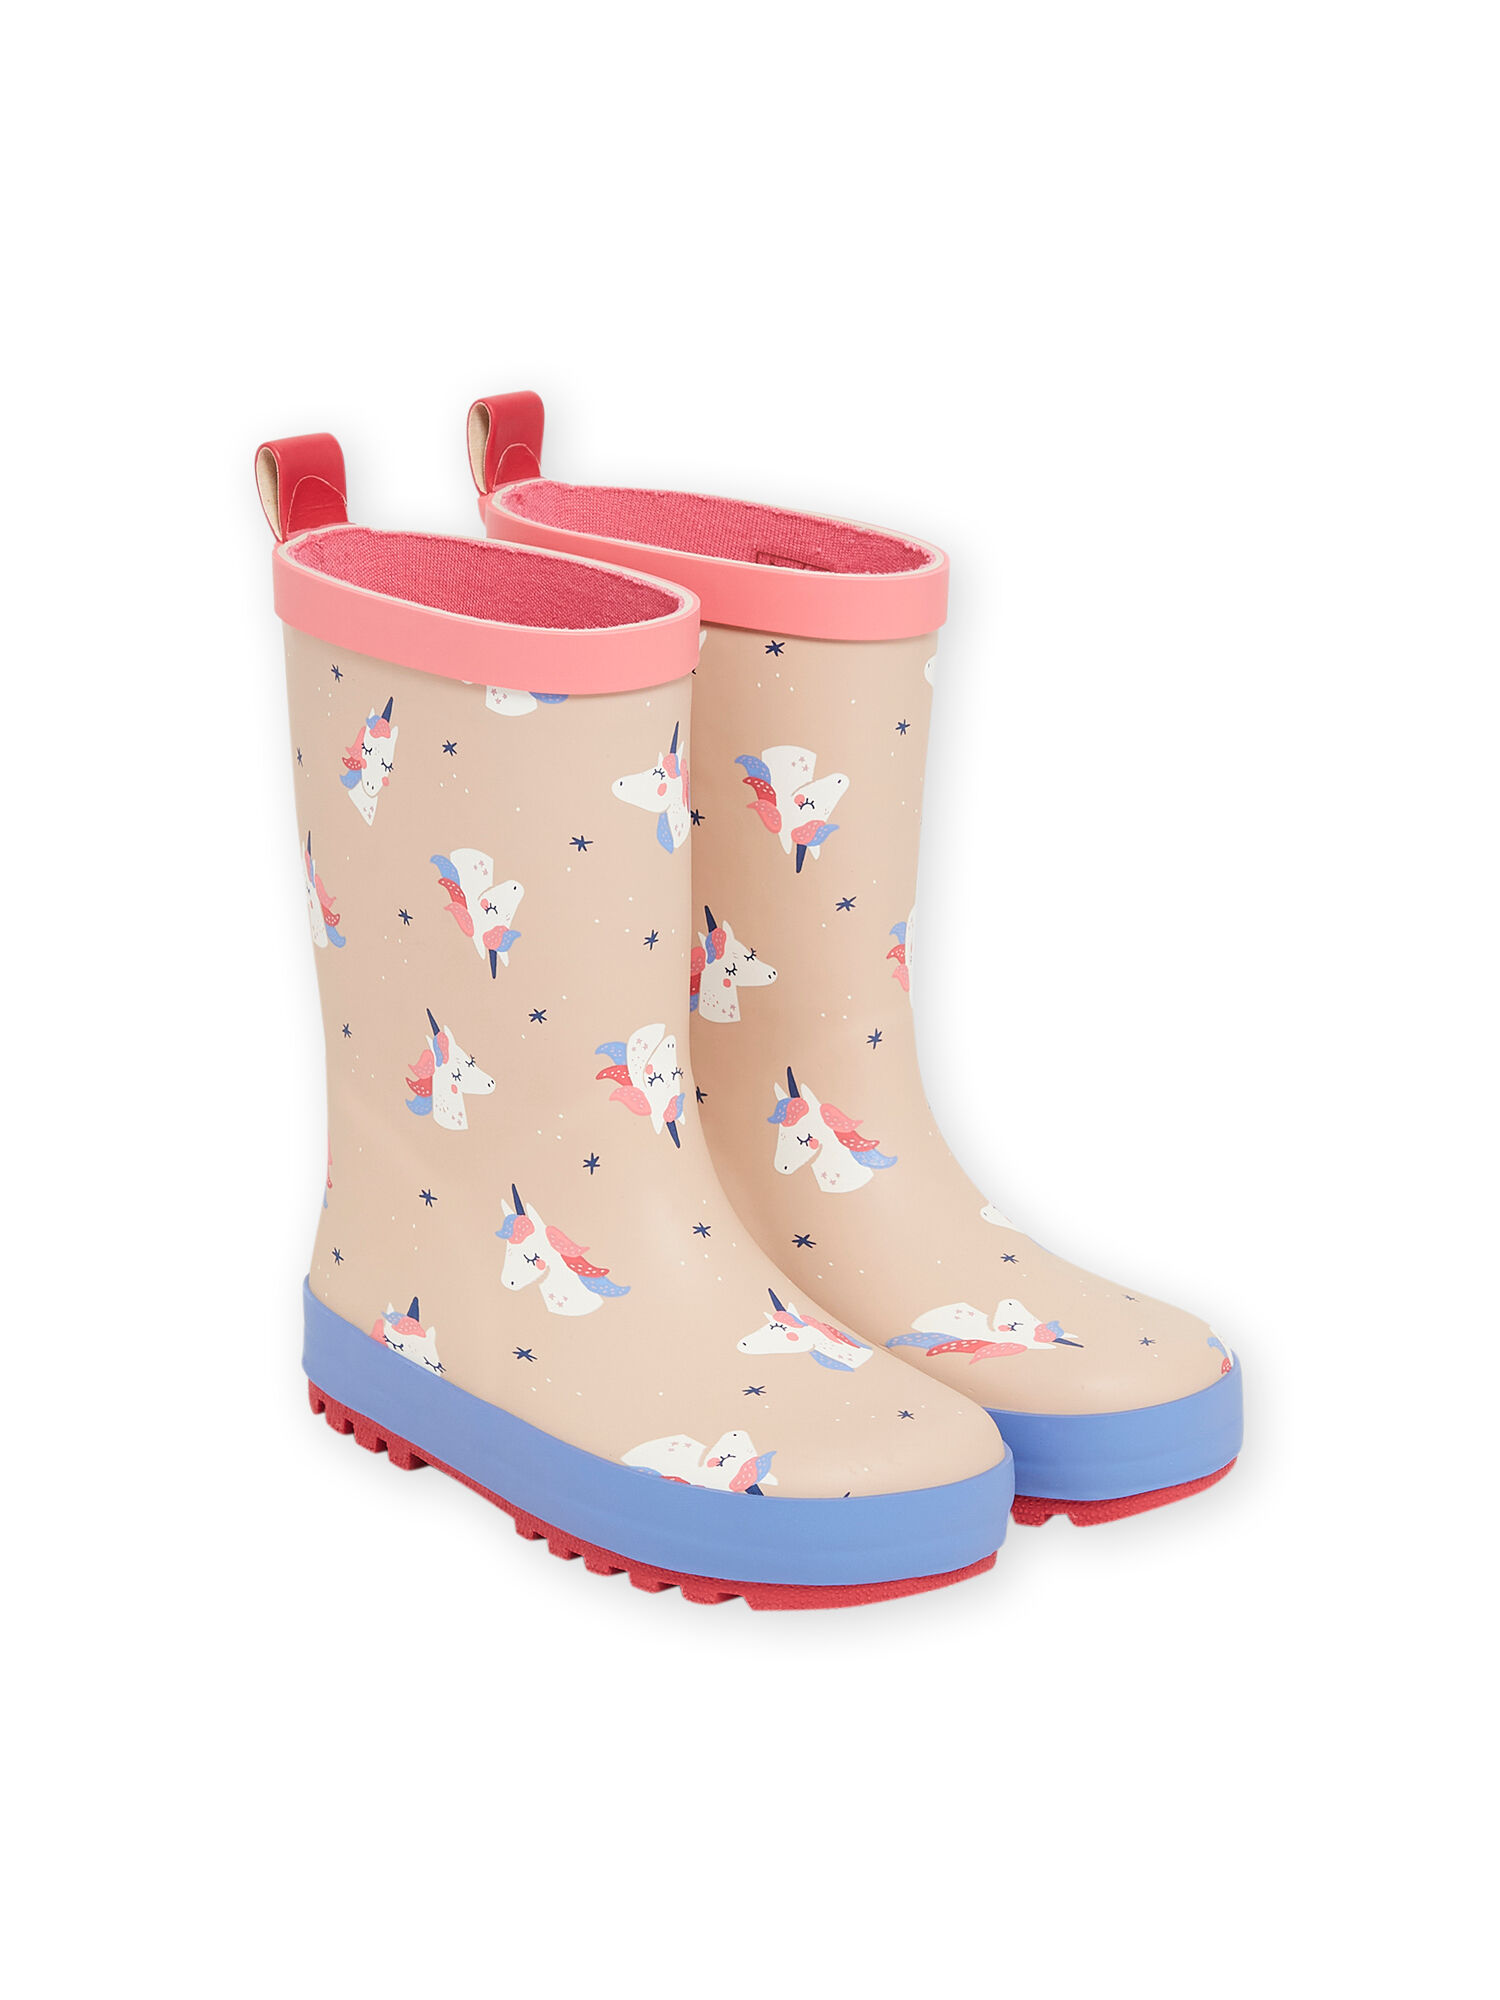 Bottes de pluie licorne collection maternelle La Redoute Fille Chaussures Bottes Bottes de pluie 